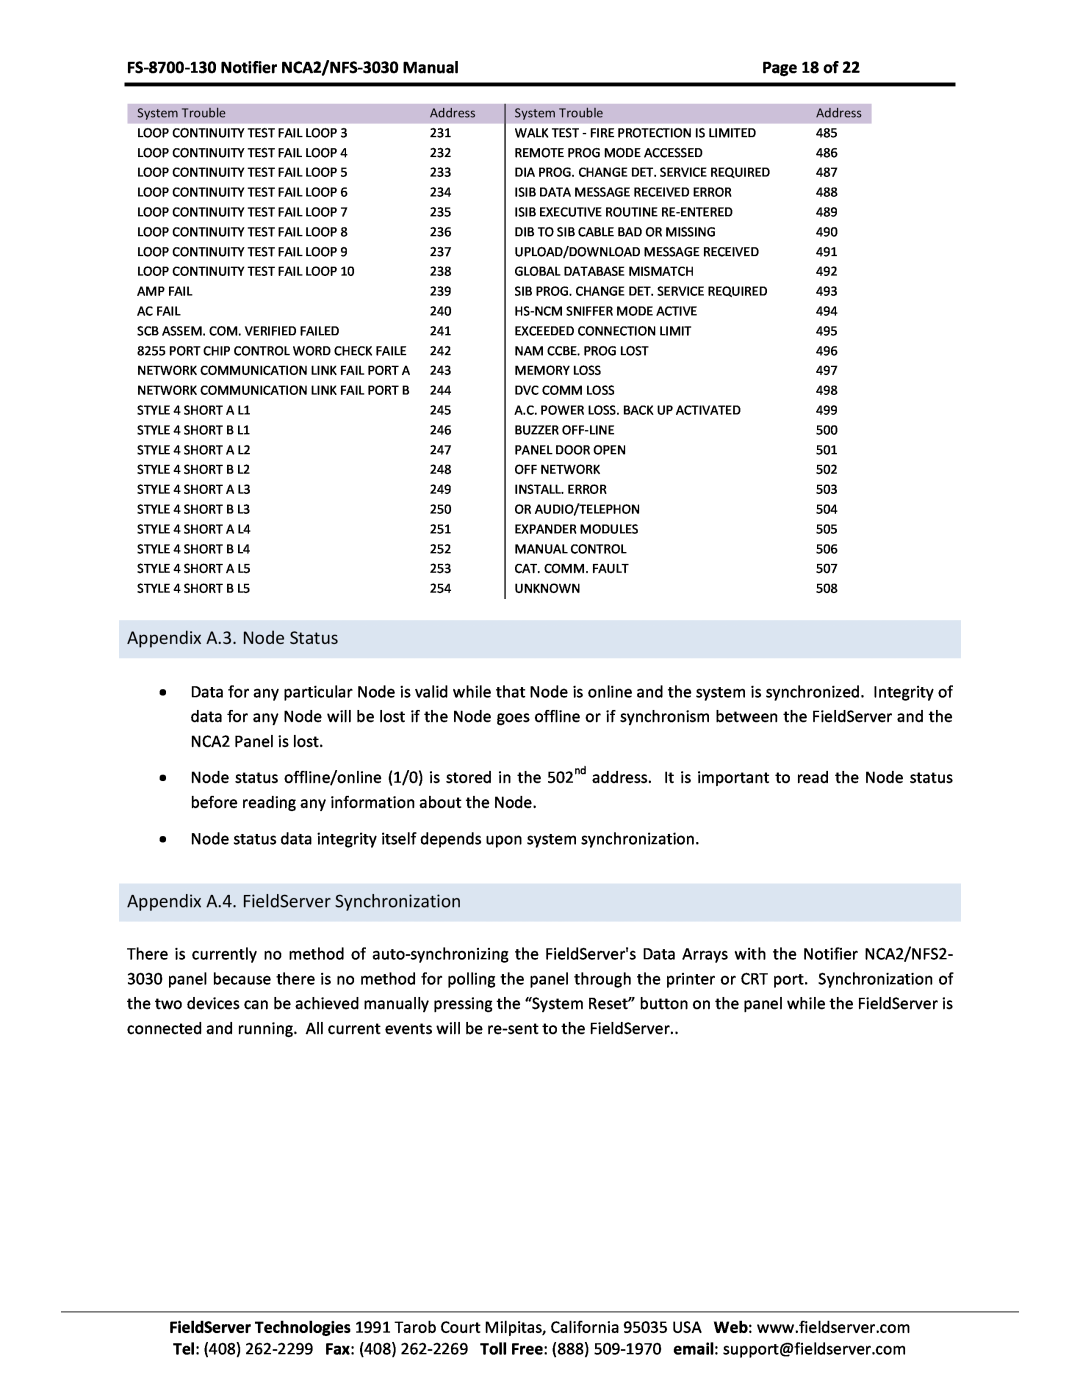 FieldServer FS-8700-130, NCA2-NFS2-3030 Appendix A.3. Node Status, Appendix A.4. FieldServer Synchronization, Page 18 of 